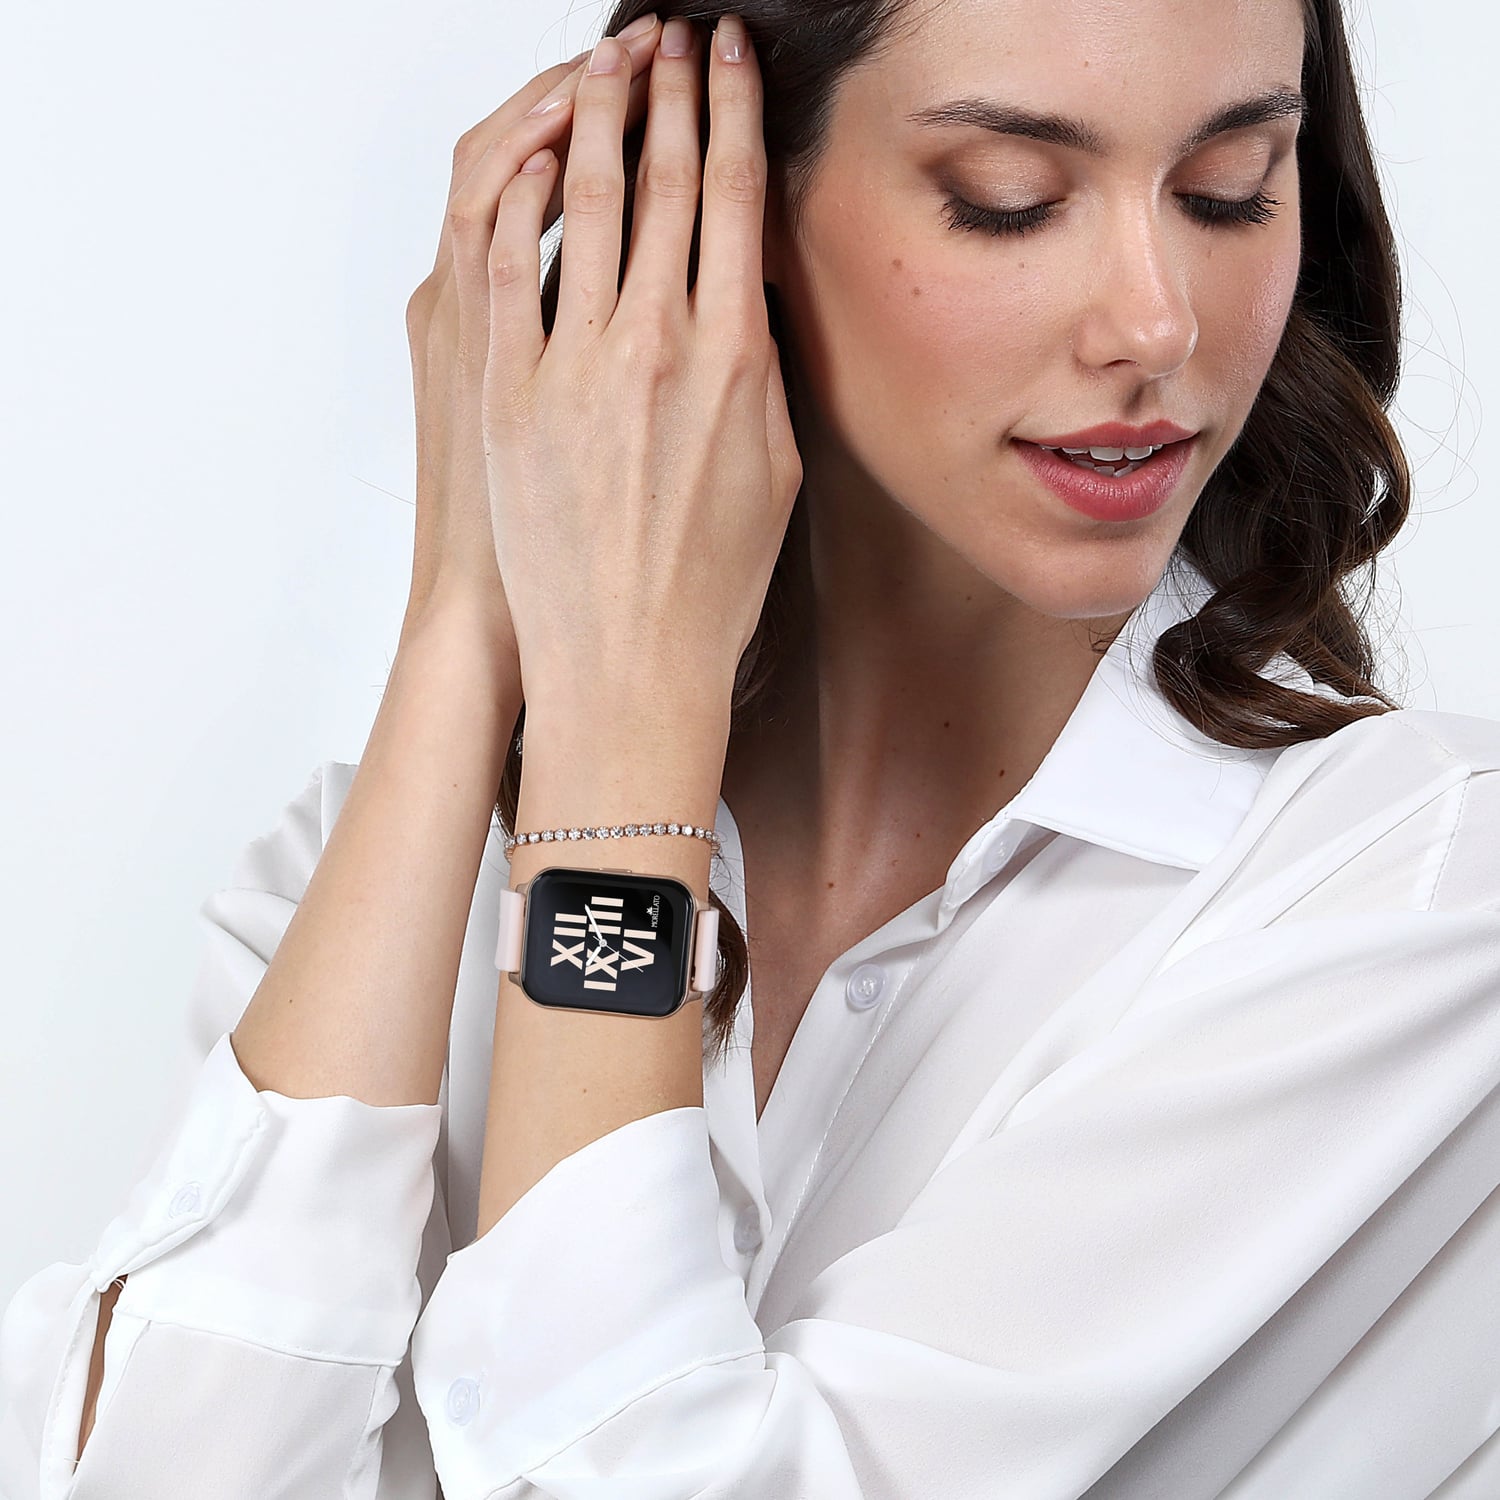 Montre Smartwatch pour Femme Morellato R0151170504, M-03 2024